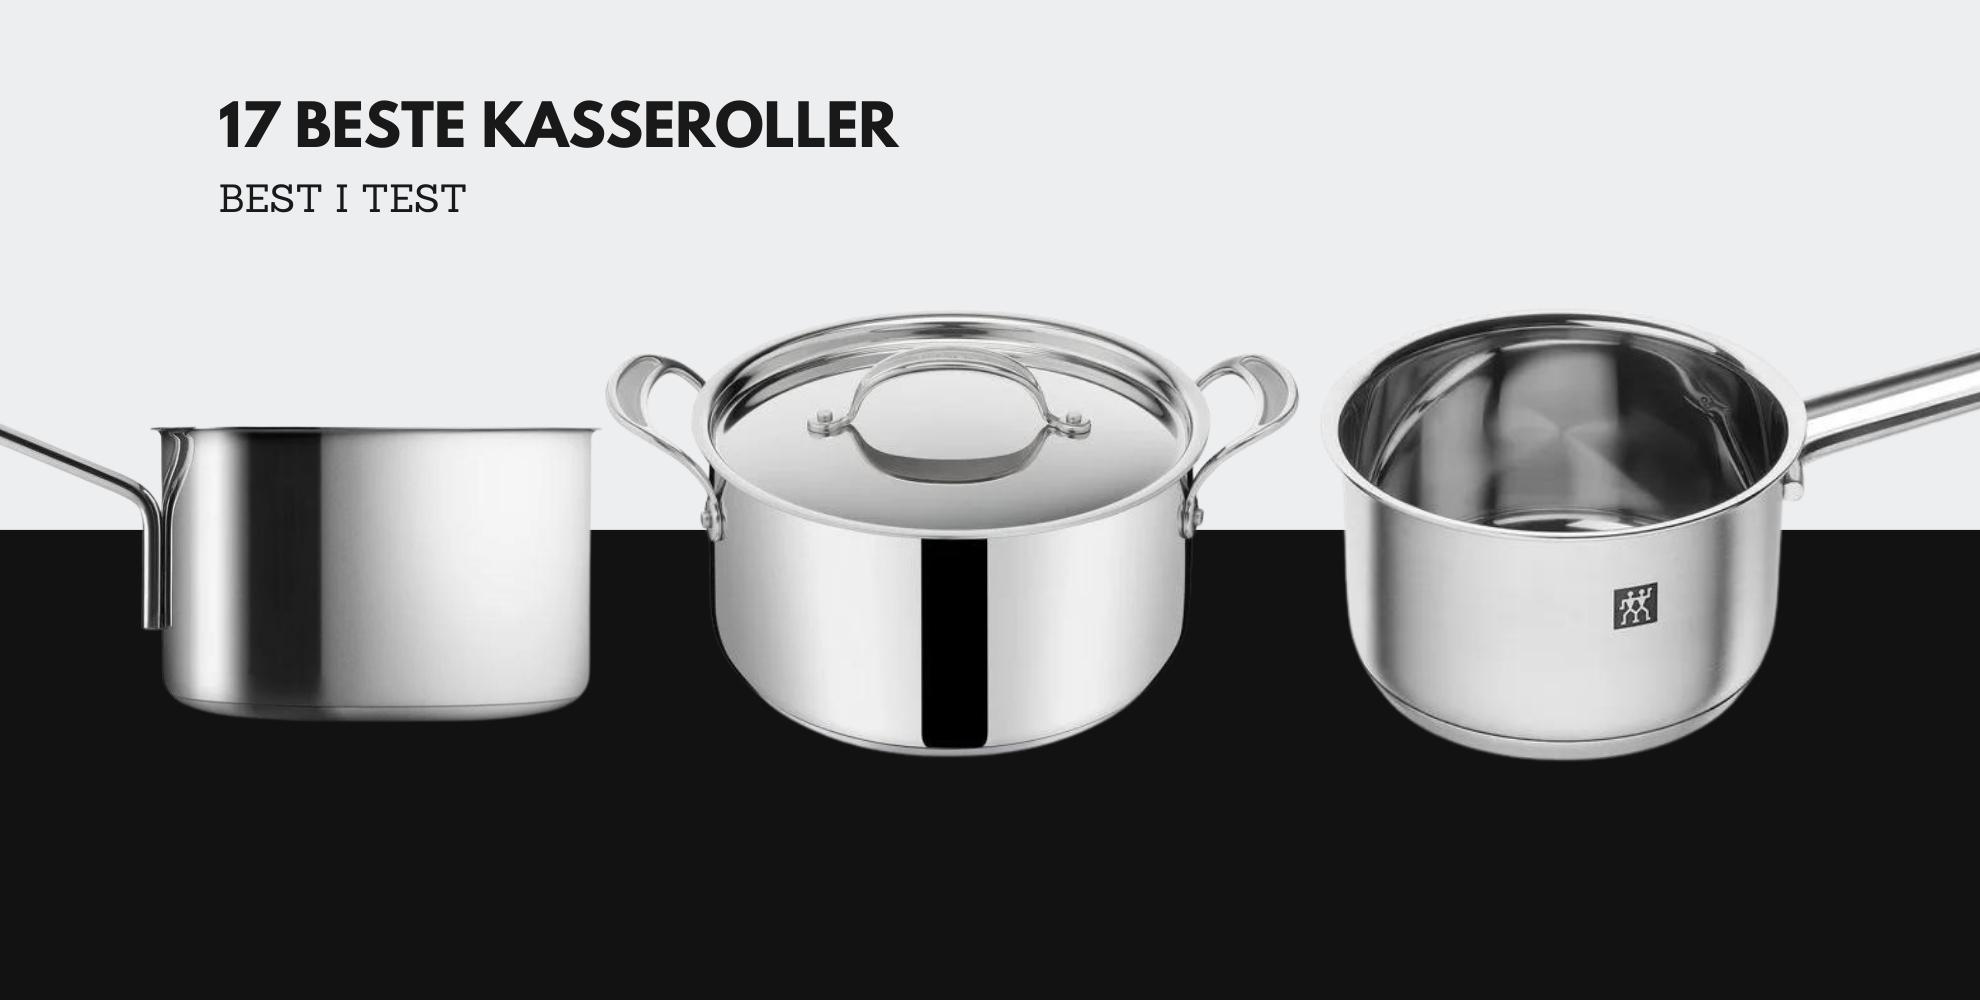 Bilde av tre knallgode kasseroller og tekst: 17 beste kasseroller, best i test